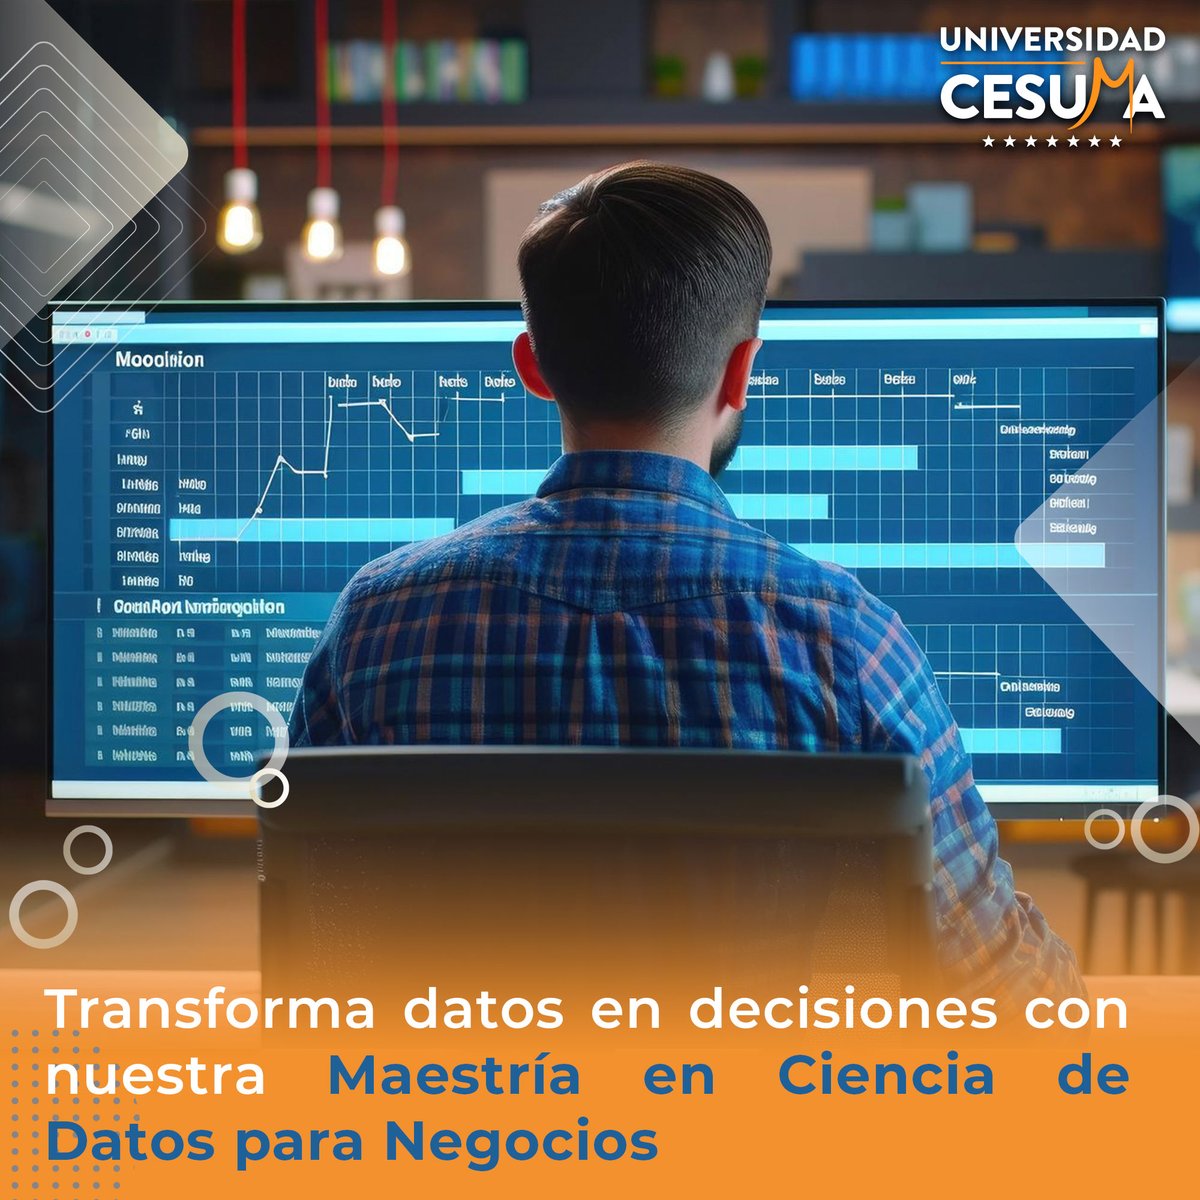 Aprende más y eleva tu carrera en ⁣cesuma.mx/master-propios…  ⁣ #BigData #BusinessAnalytics #CESUMA #CienciaDeDatos #TransformaciónDigital #LiderazgoEnDatos #FuturoDeLosNegocios⁣